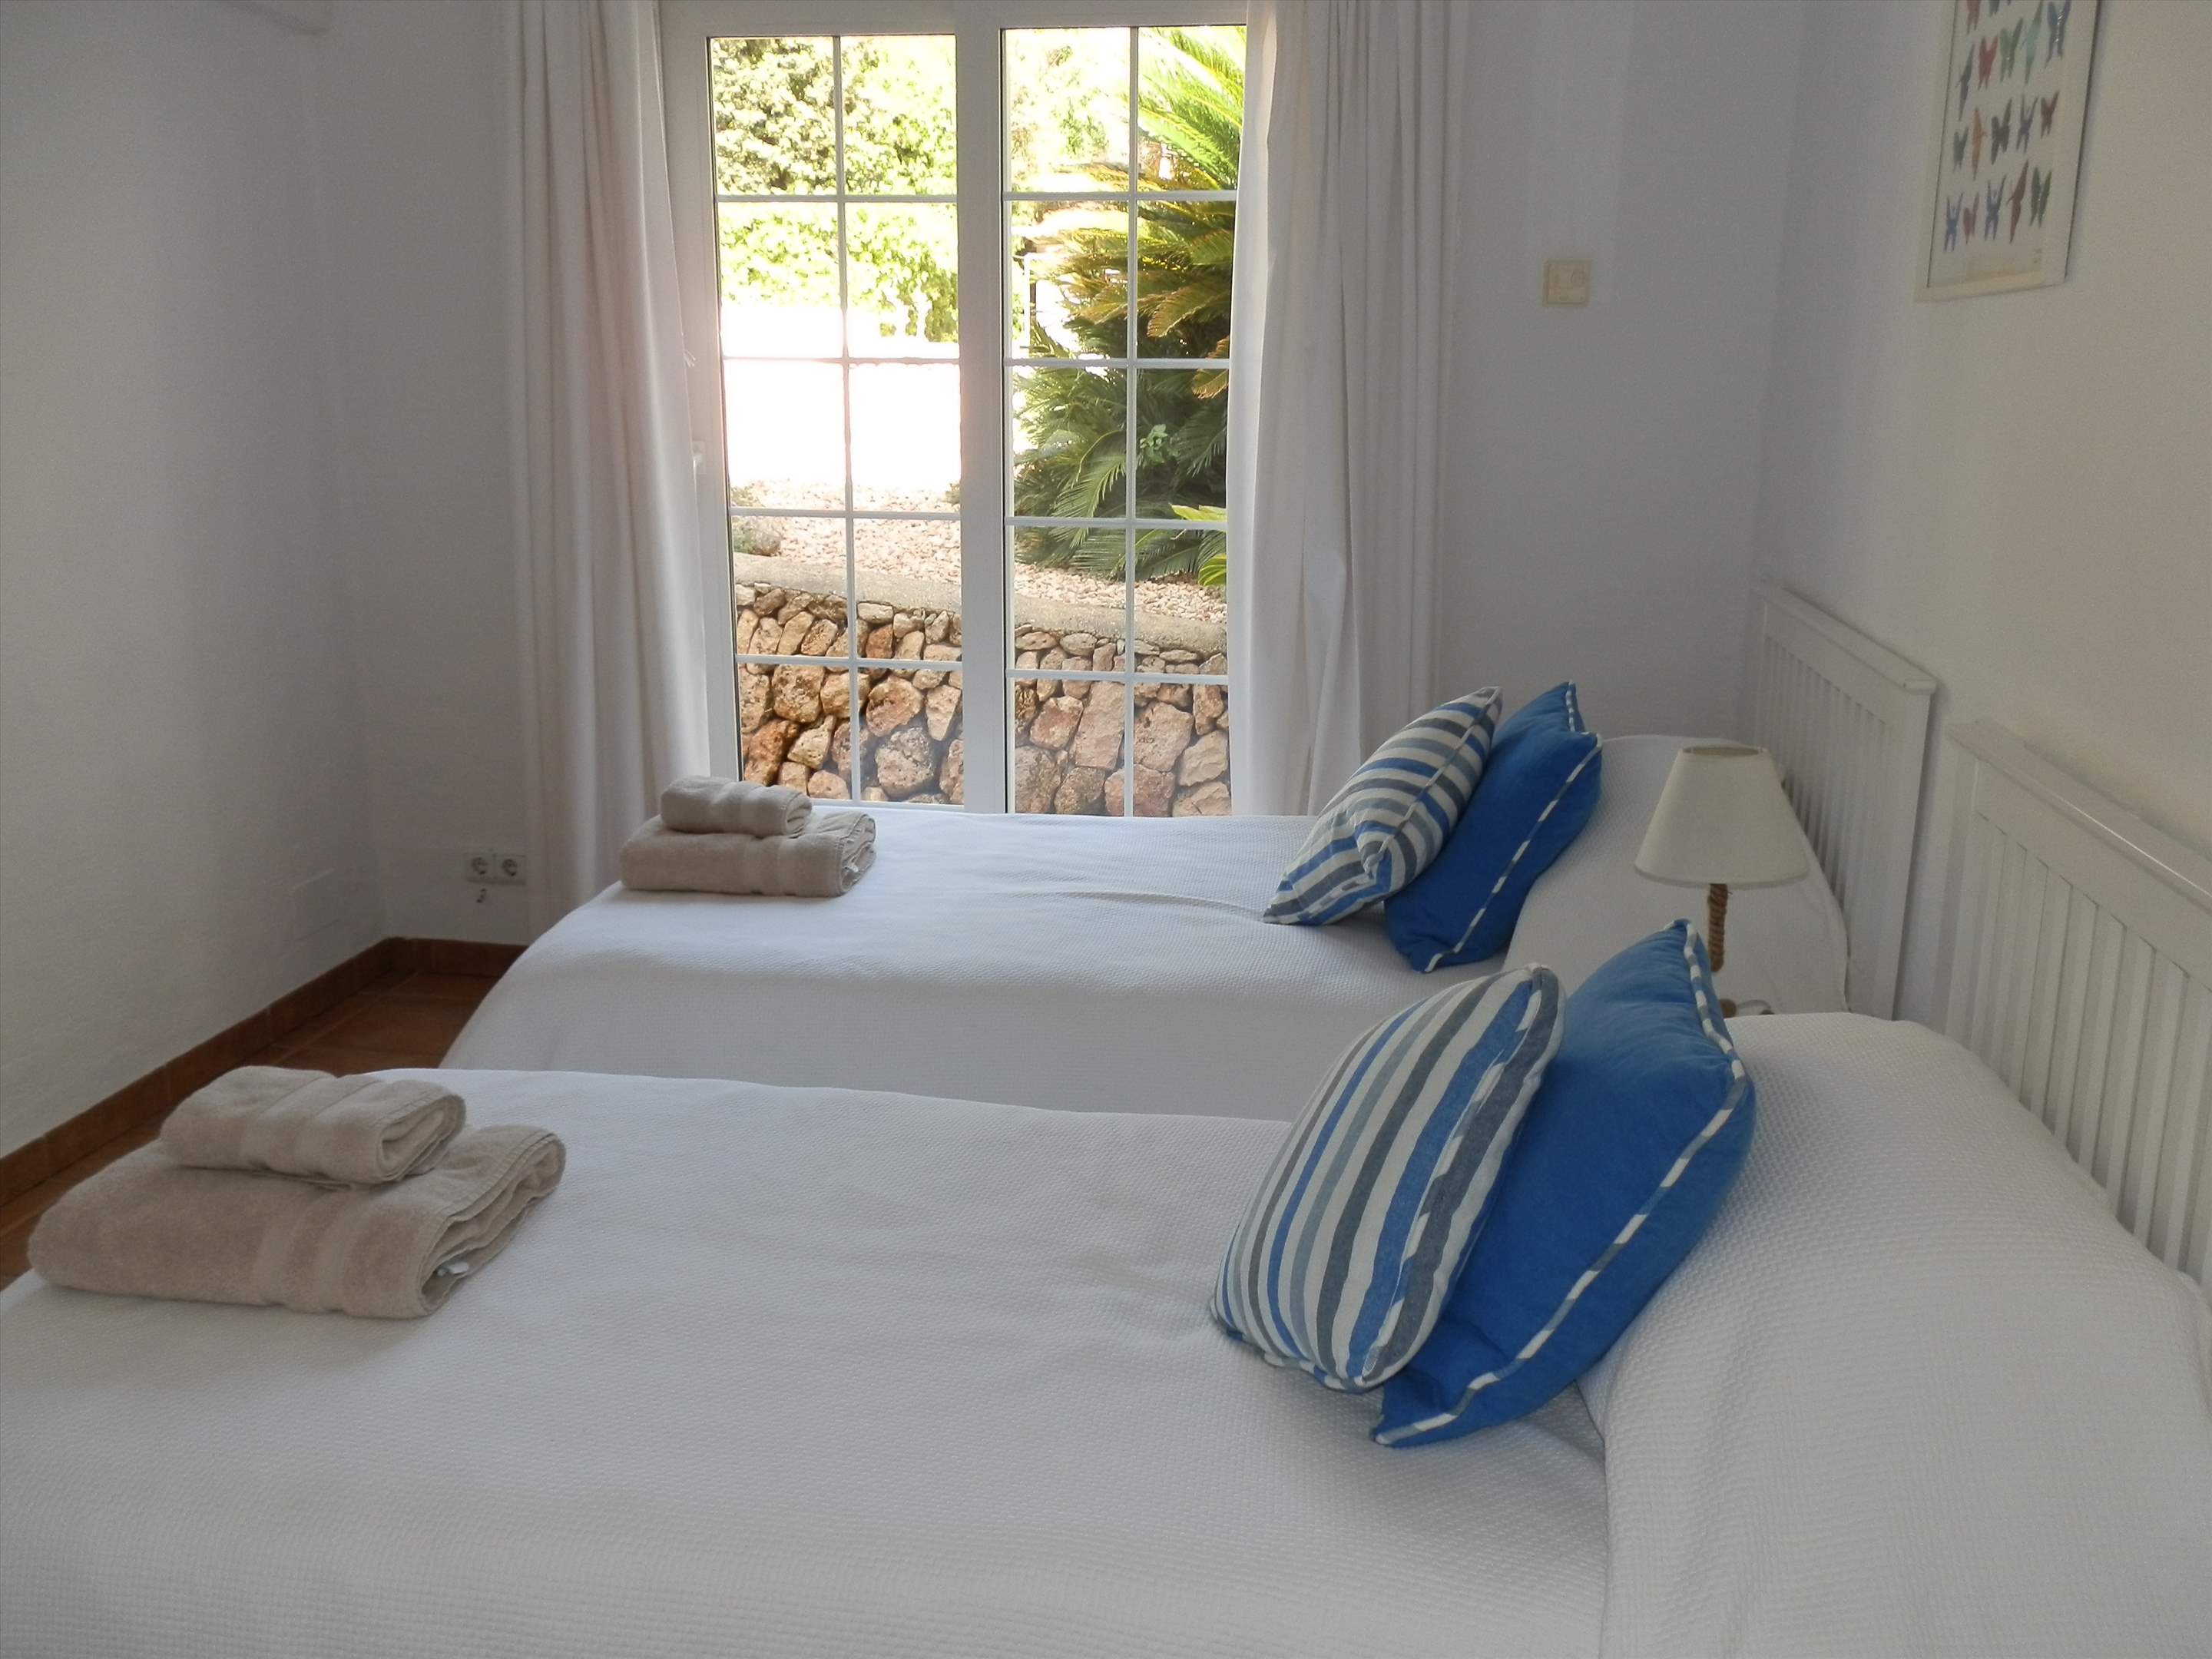 Casa del Mar de Ana-Cristo, 5 Bedroom rate, 5 bedroom villa in Mahon, San Luis & South East, Menorca Photo #20